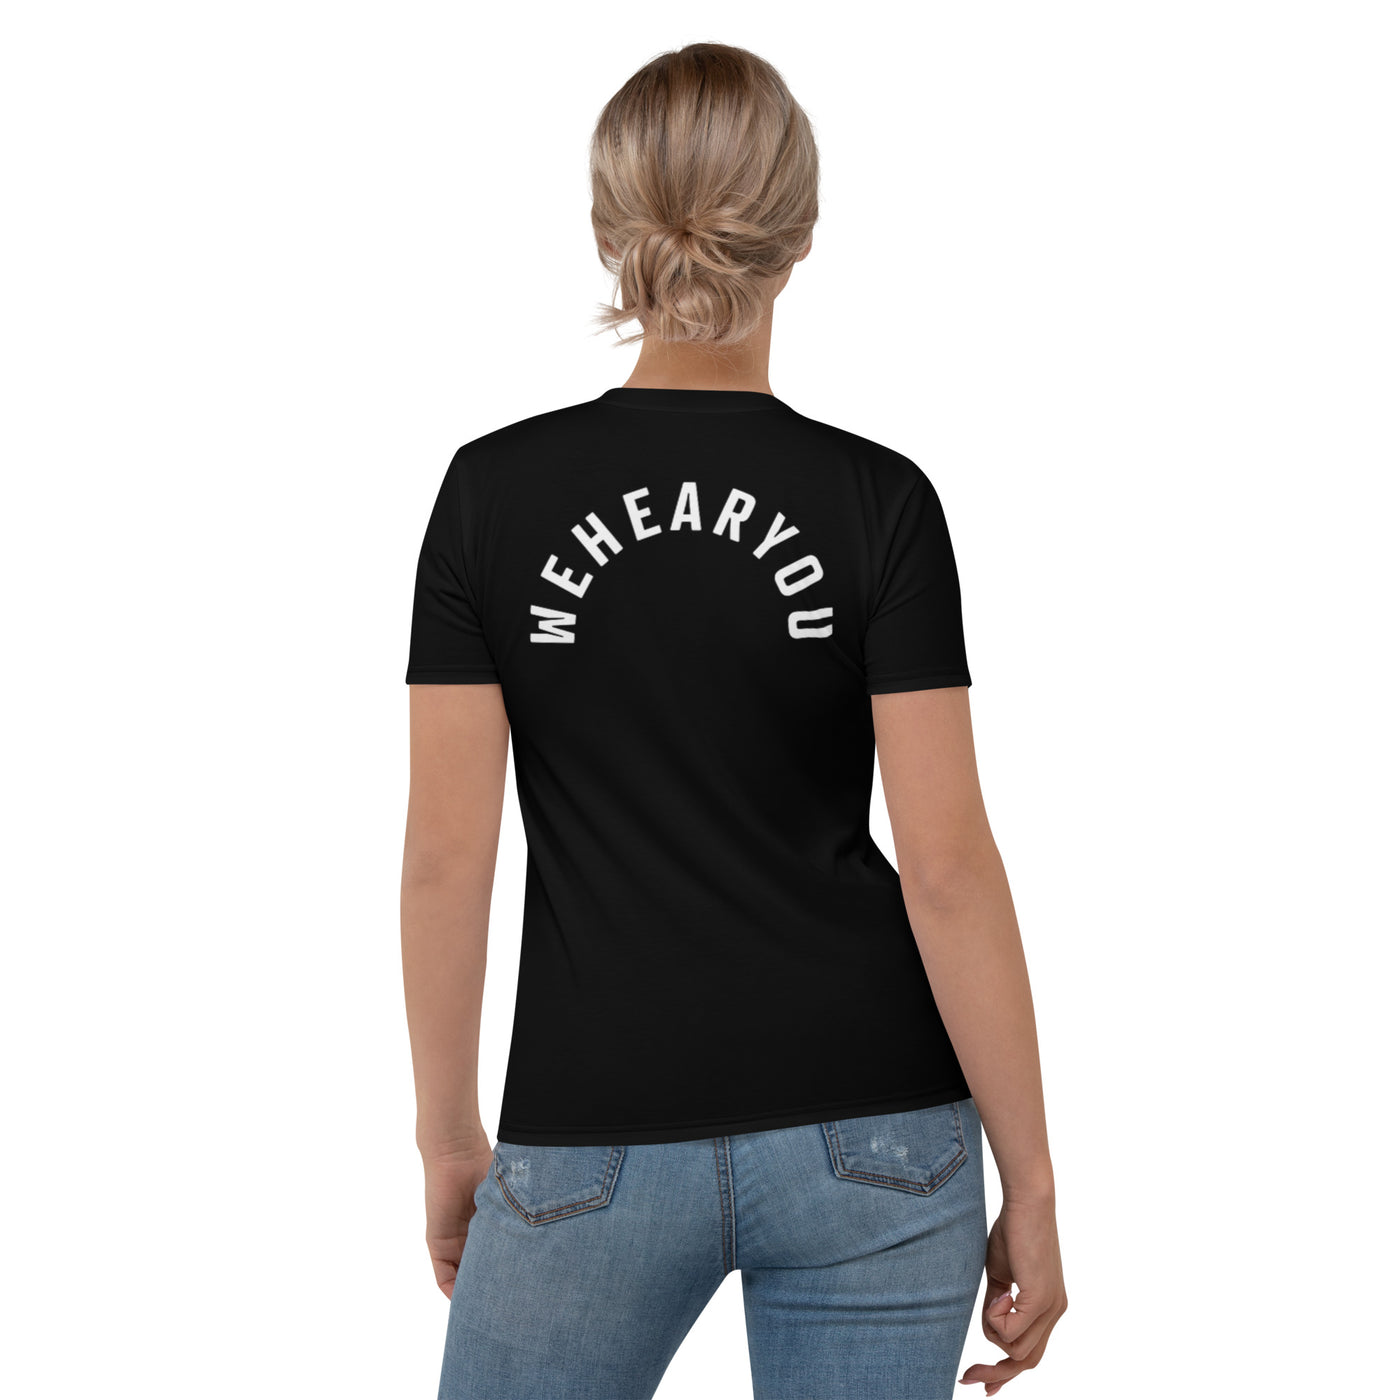 WE HEAR YOU Women's T-shirt